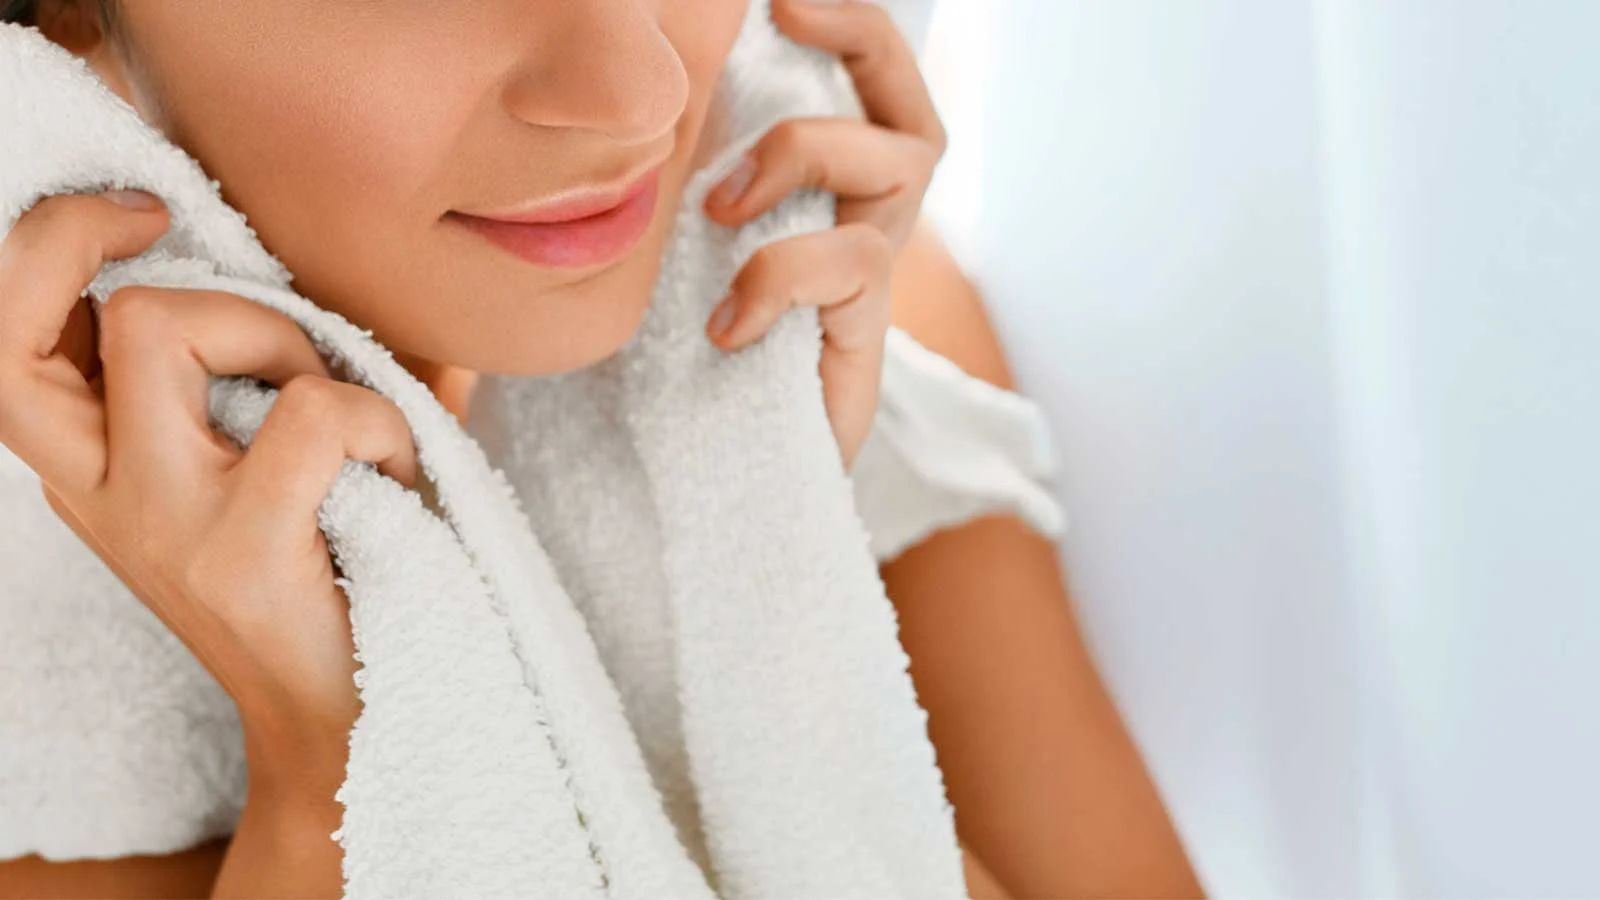 Hydratisieren Sie Ihre Gesichtshaut mit einem warmen, feuchten Waschlappen, um sich leichter zu rasieren